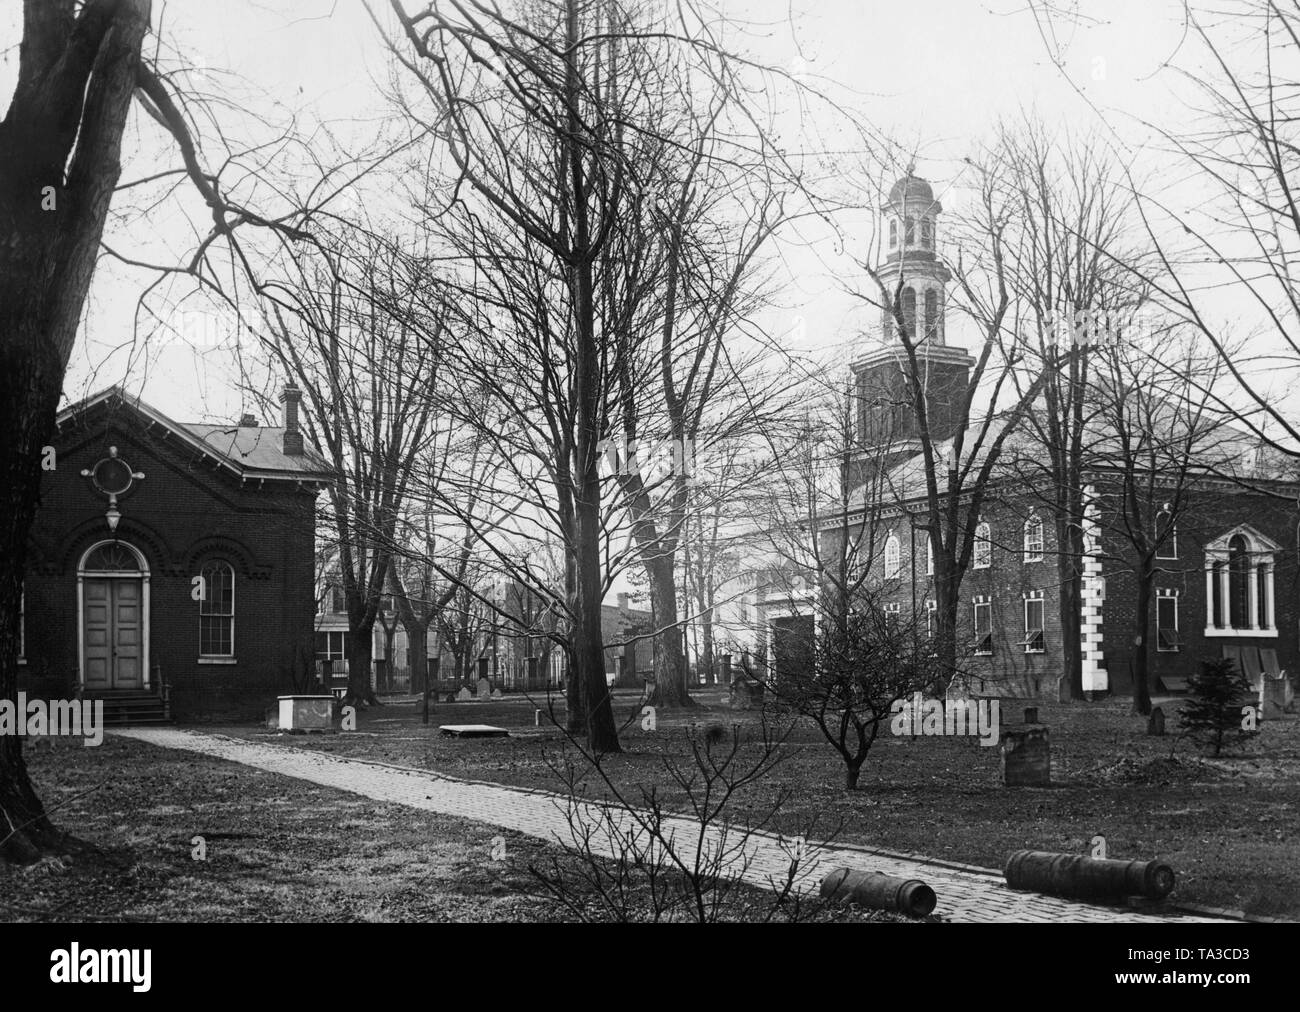 Auf dem Gelände des historischen Christus Kirche im US-Staat Virginia. Auf der linken Seite das Gebäude der Kirchenverwaltung. Auf der rechten Seite die Kirche. Die Kirche Friedhof ist die Heimat einiger der George Washington's Zeitgenossen und Freunde. Stockfoto